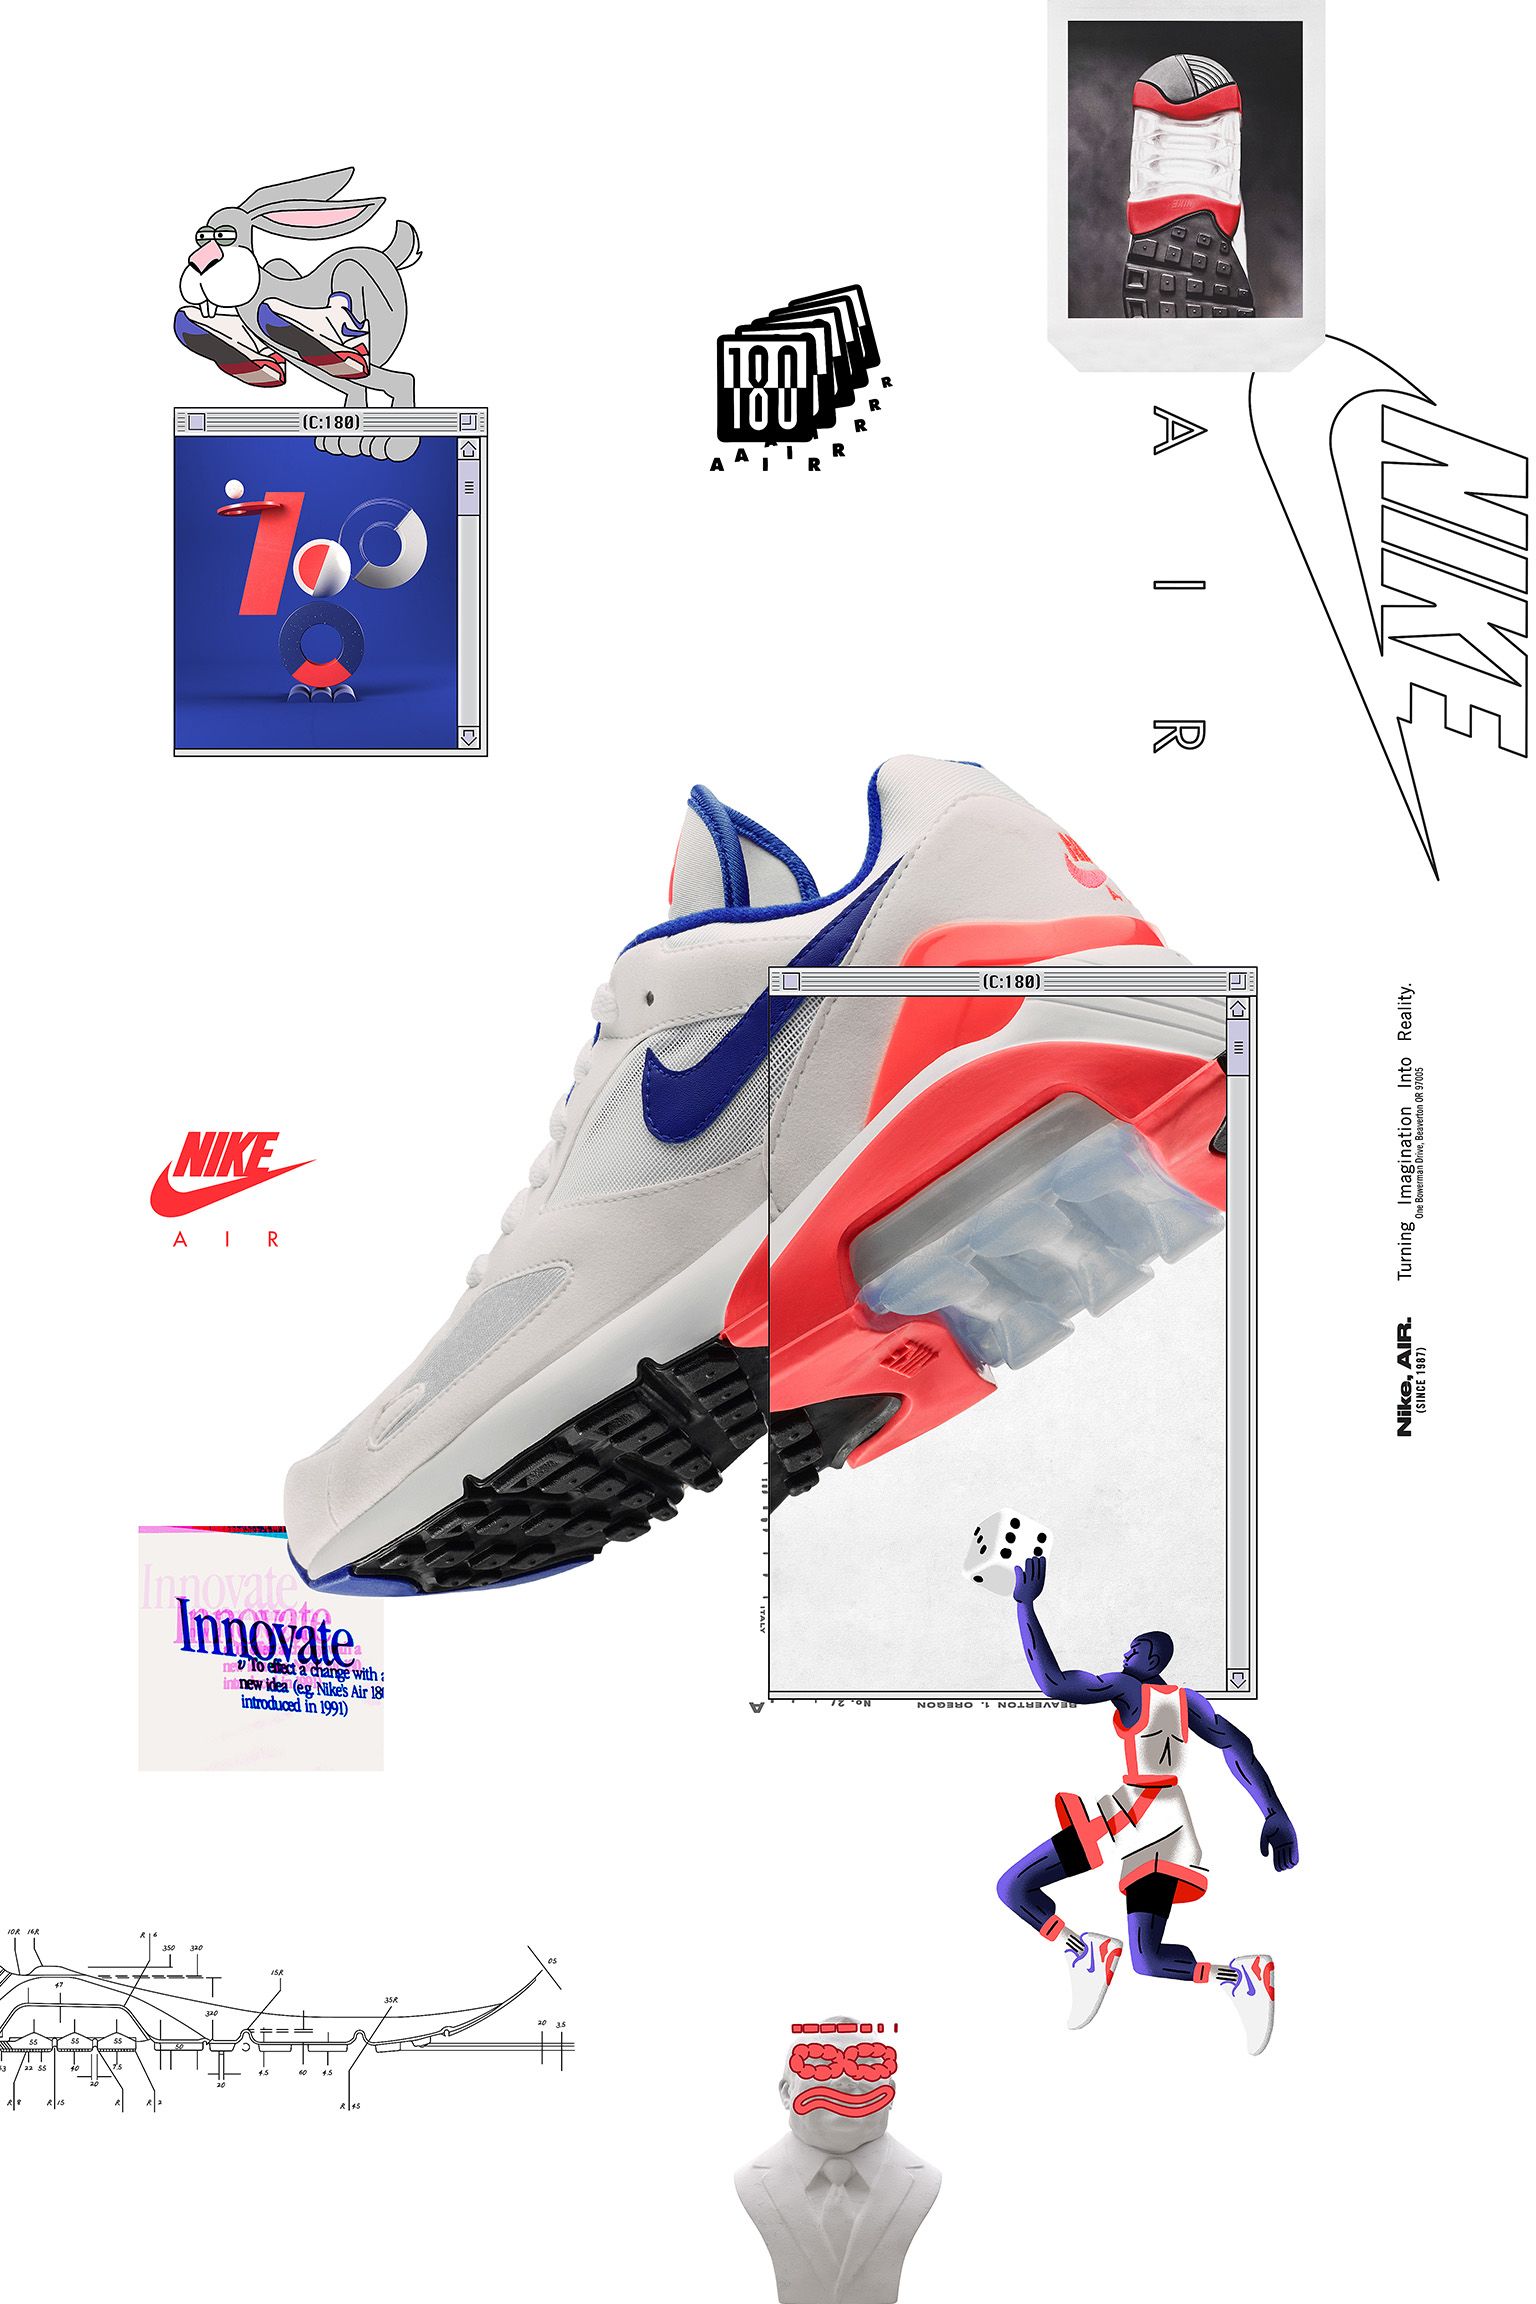 Air Max 180 'White \u0026 Ultramarine \u0026 Solar Red' Release Date. Nike SNKRS